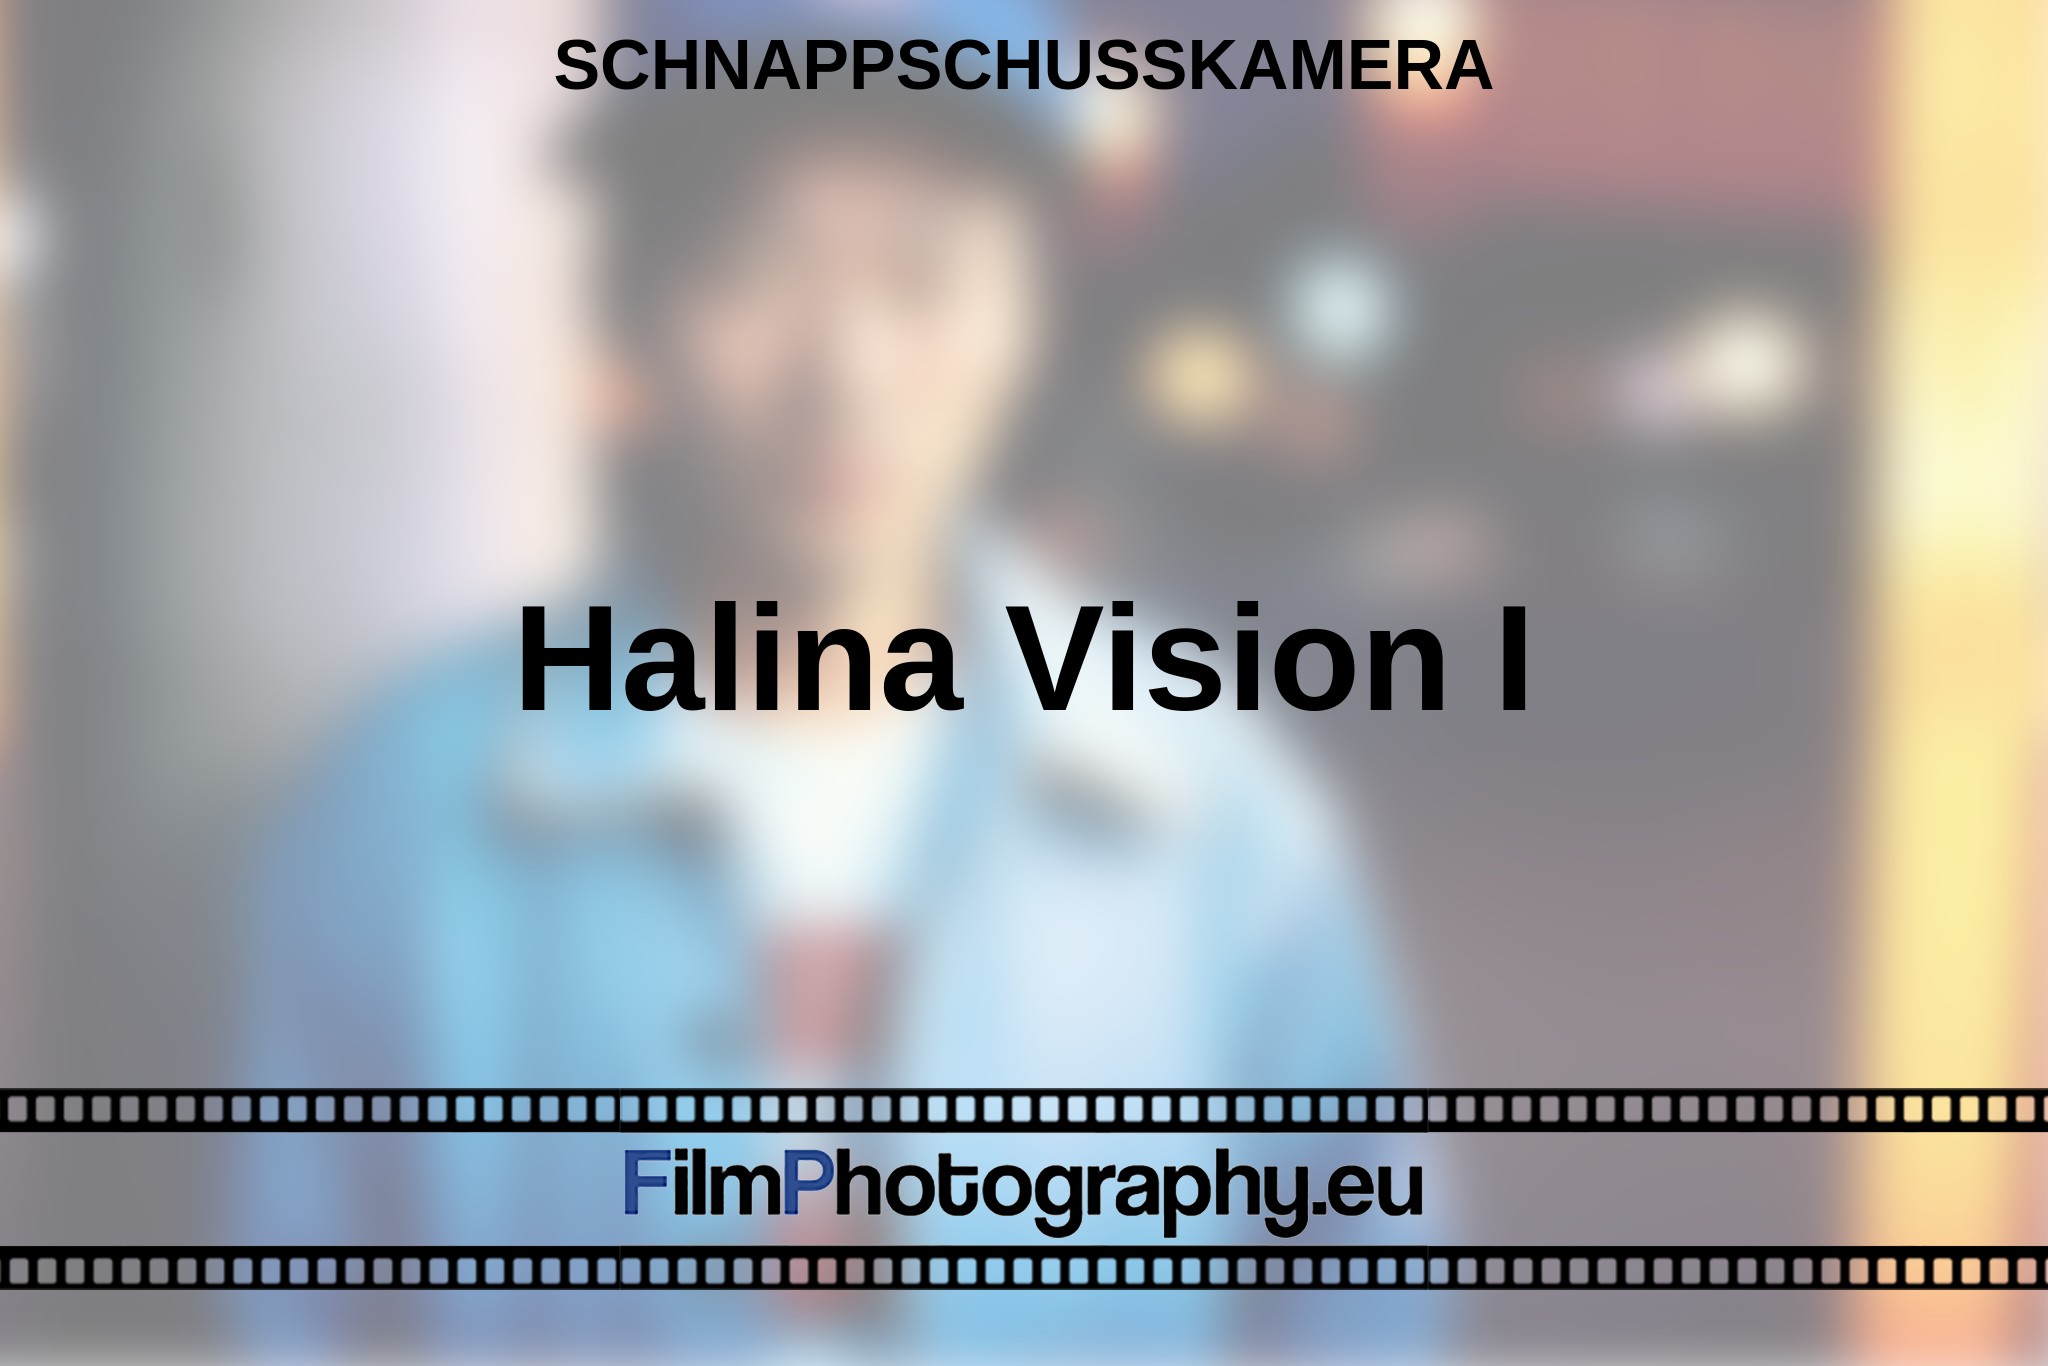 halina-vision-i-schnappschusskamera-bnv.jpg